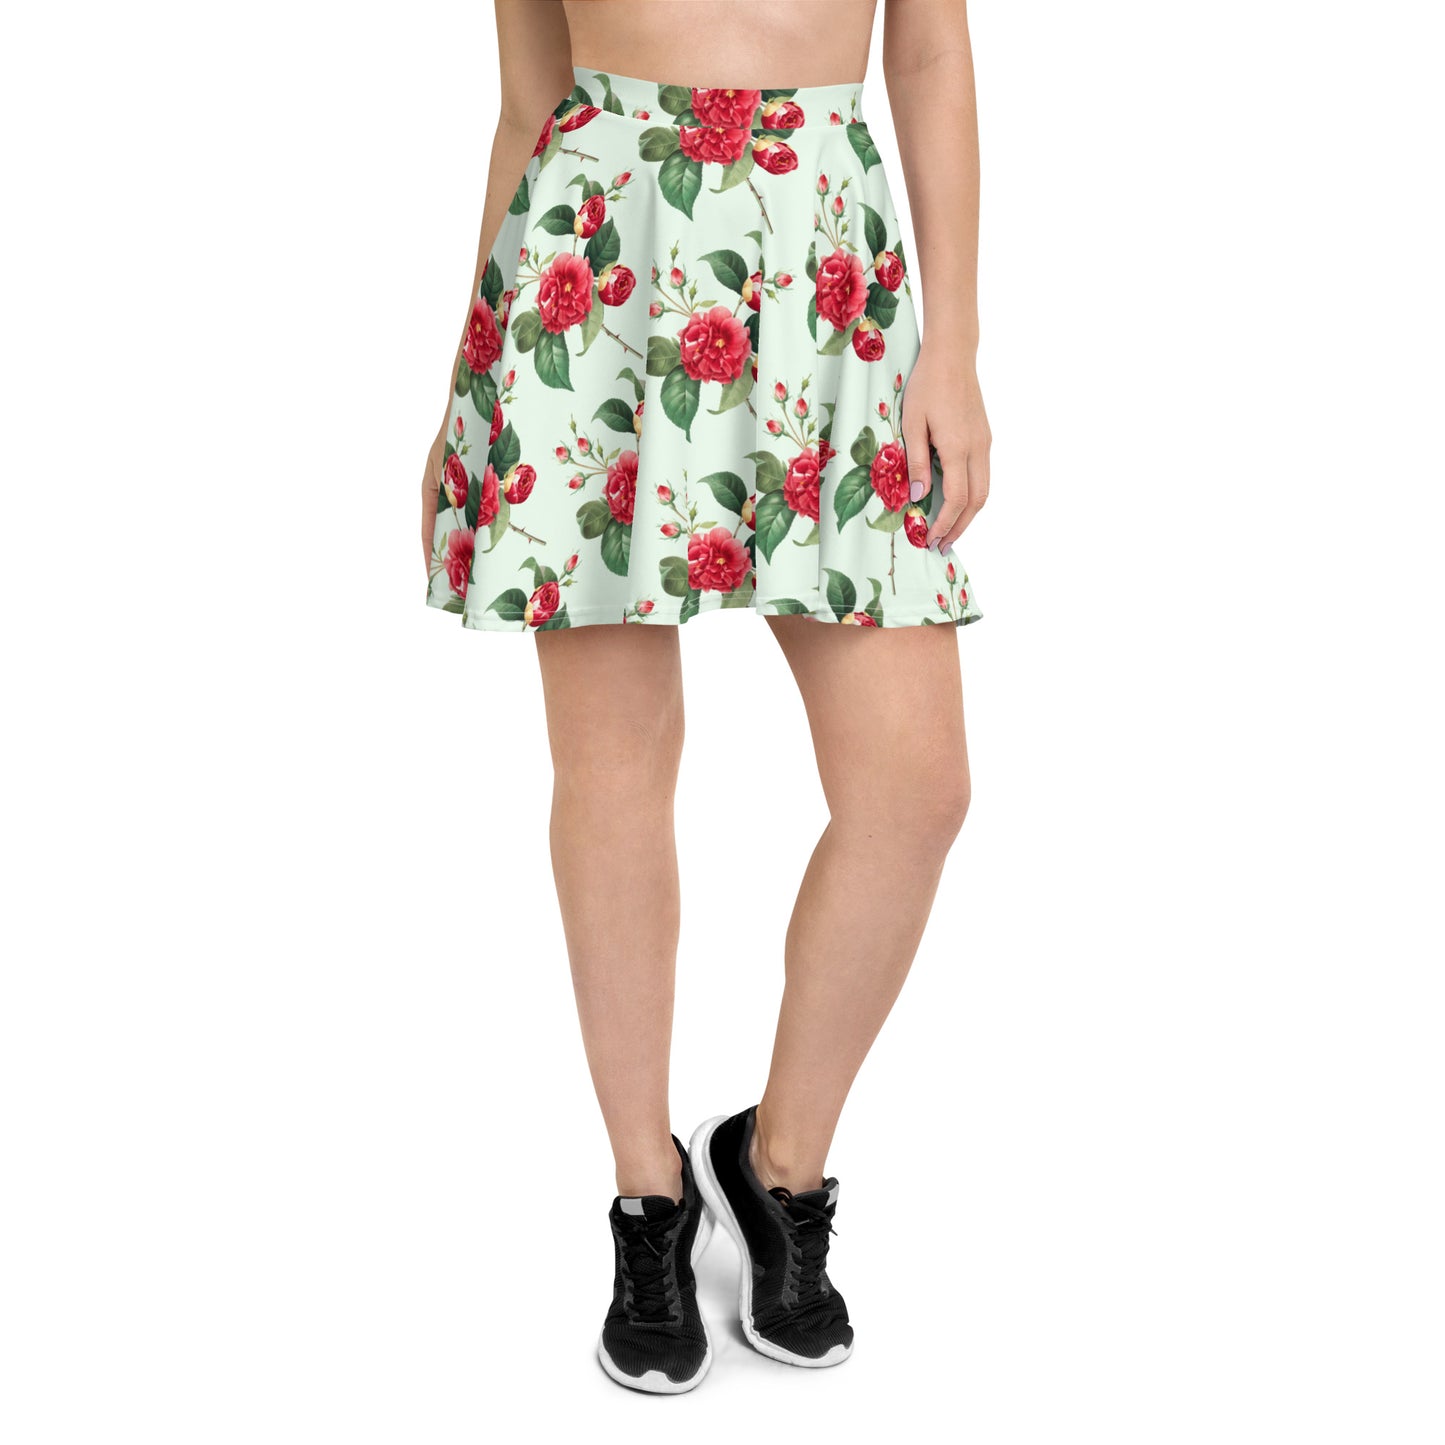 Elegant Floral Print Skater Skirt